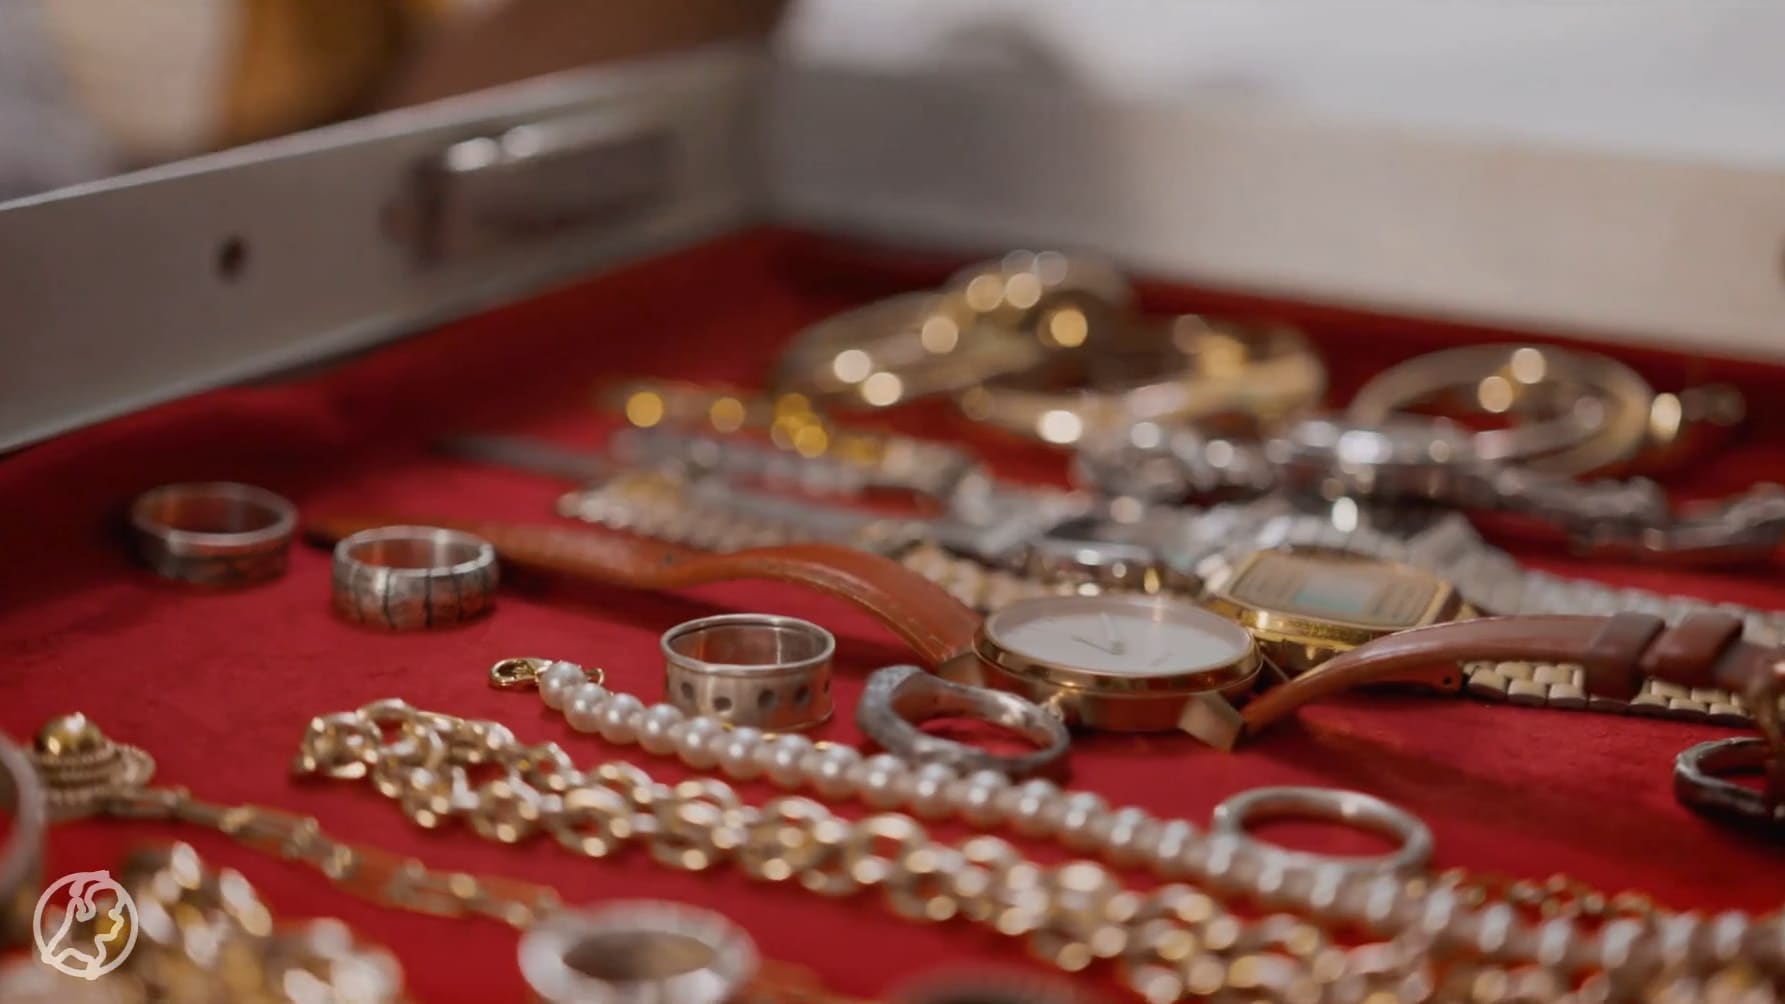 Dit is hét moment om sieraden te verkopen: je krijgt meer geld dan ooit voor je goud